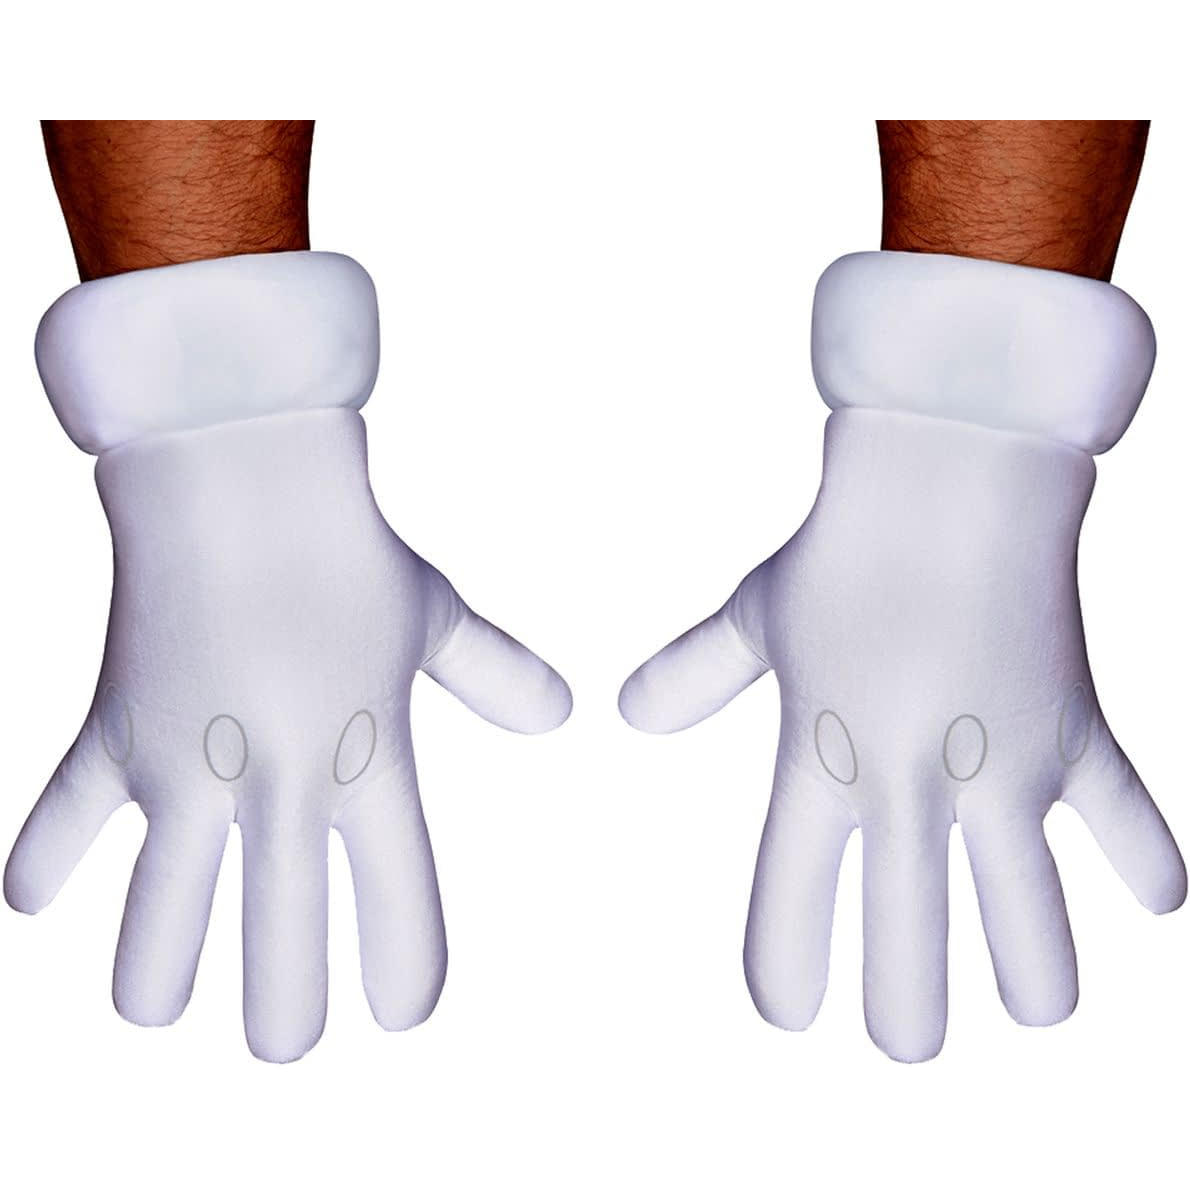 Super Mario Gloves Adult Scostumes